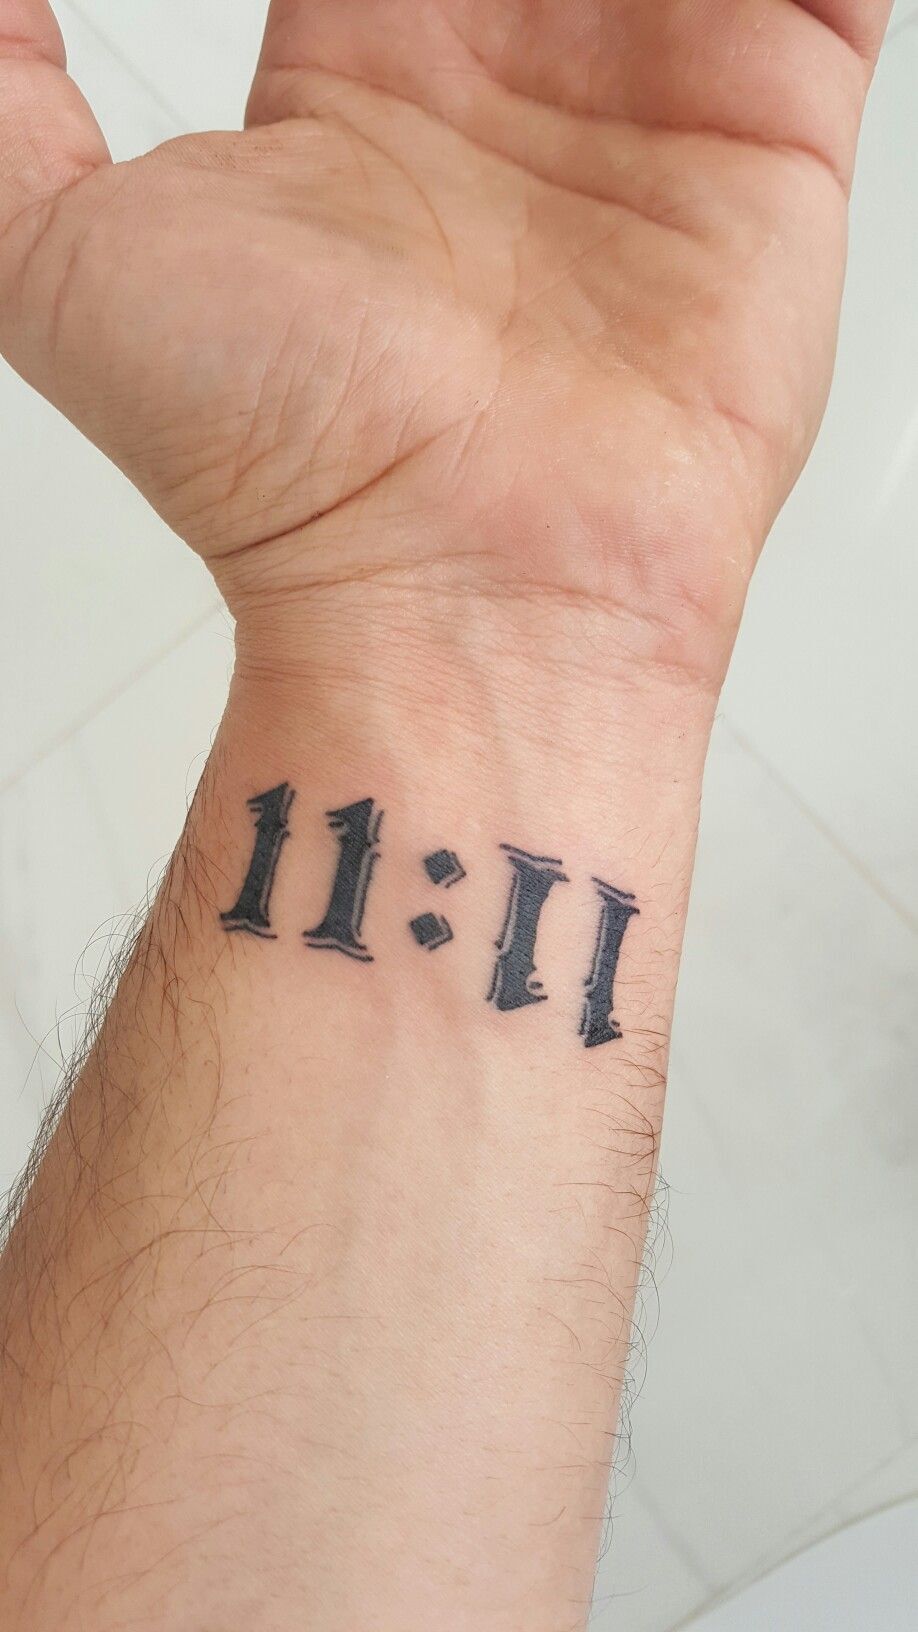 11:11 tattoo men